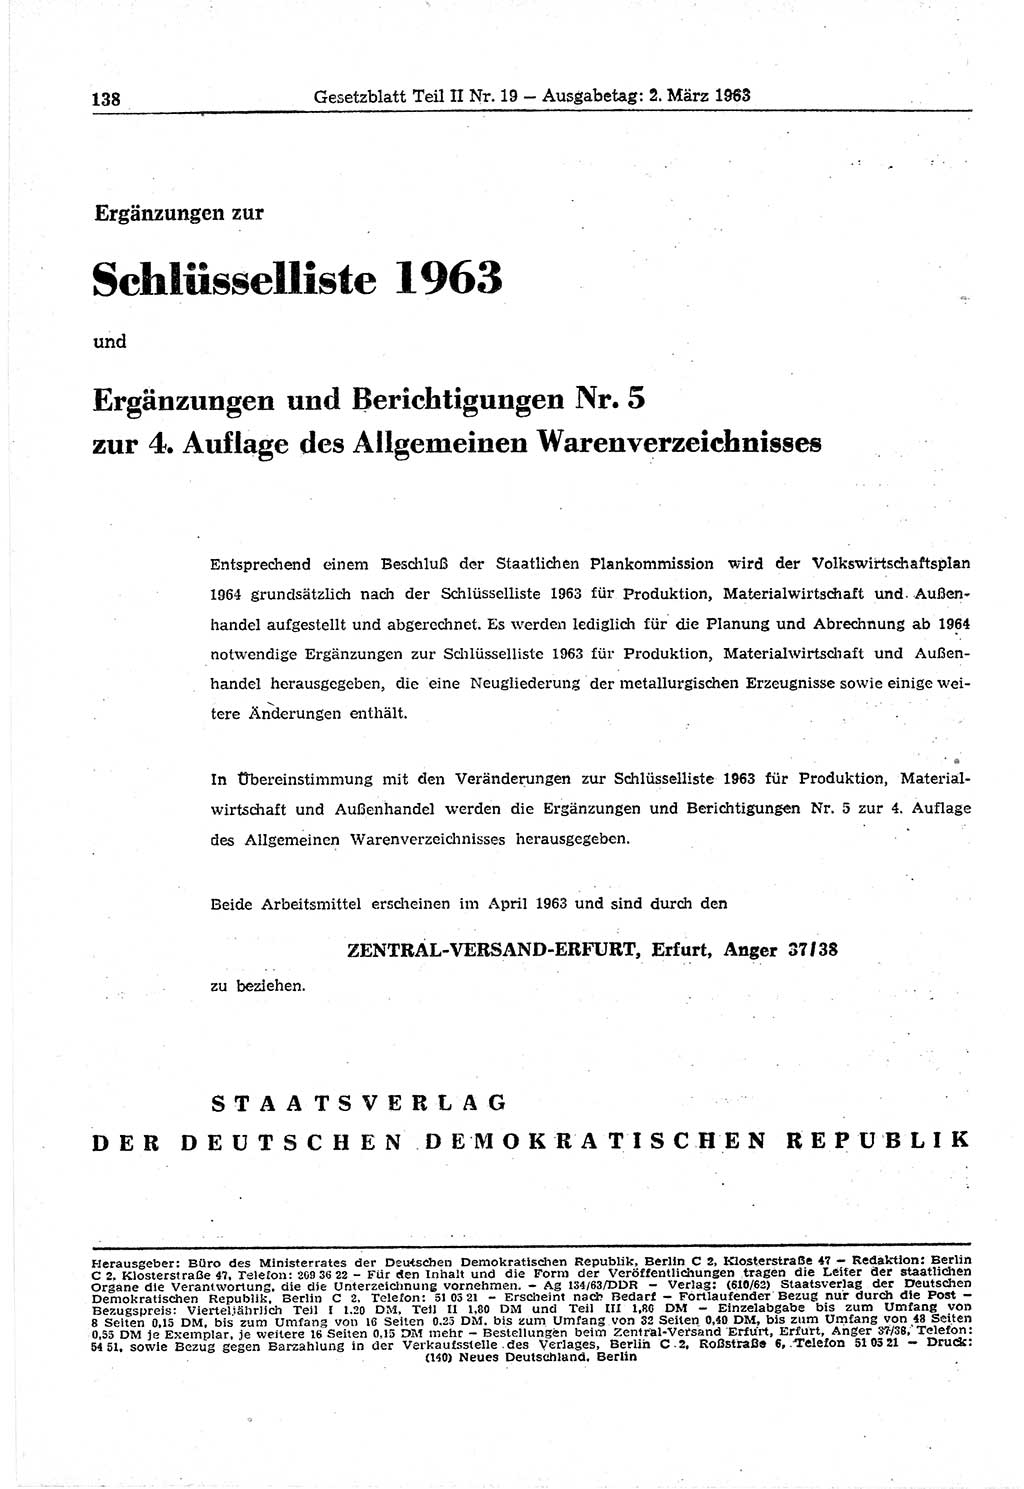 Gesetzblatt (GBl.) der Deutschen Demokratischen Republik (DDR) Teil ⅠⅠ 1963, Seite 138 (GBl. DDR ⅠⅠ 1963, S. 138)